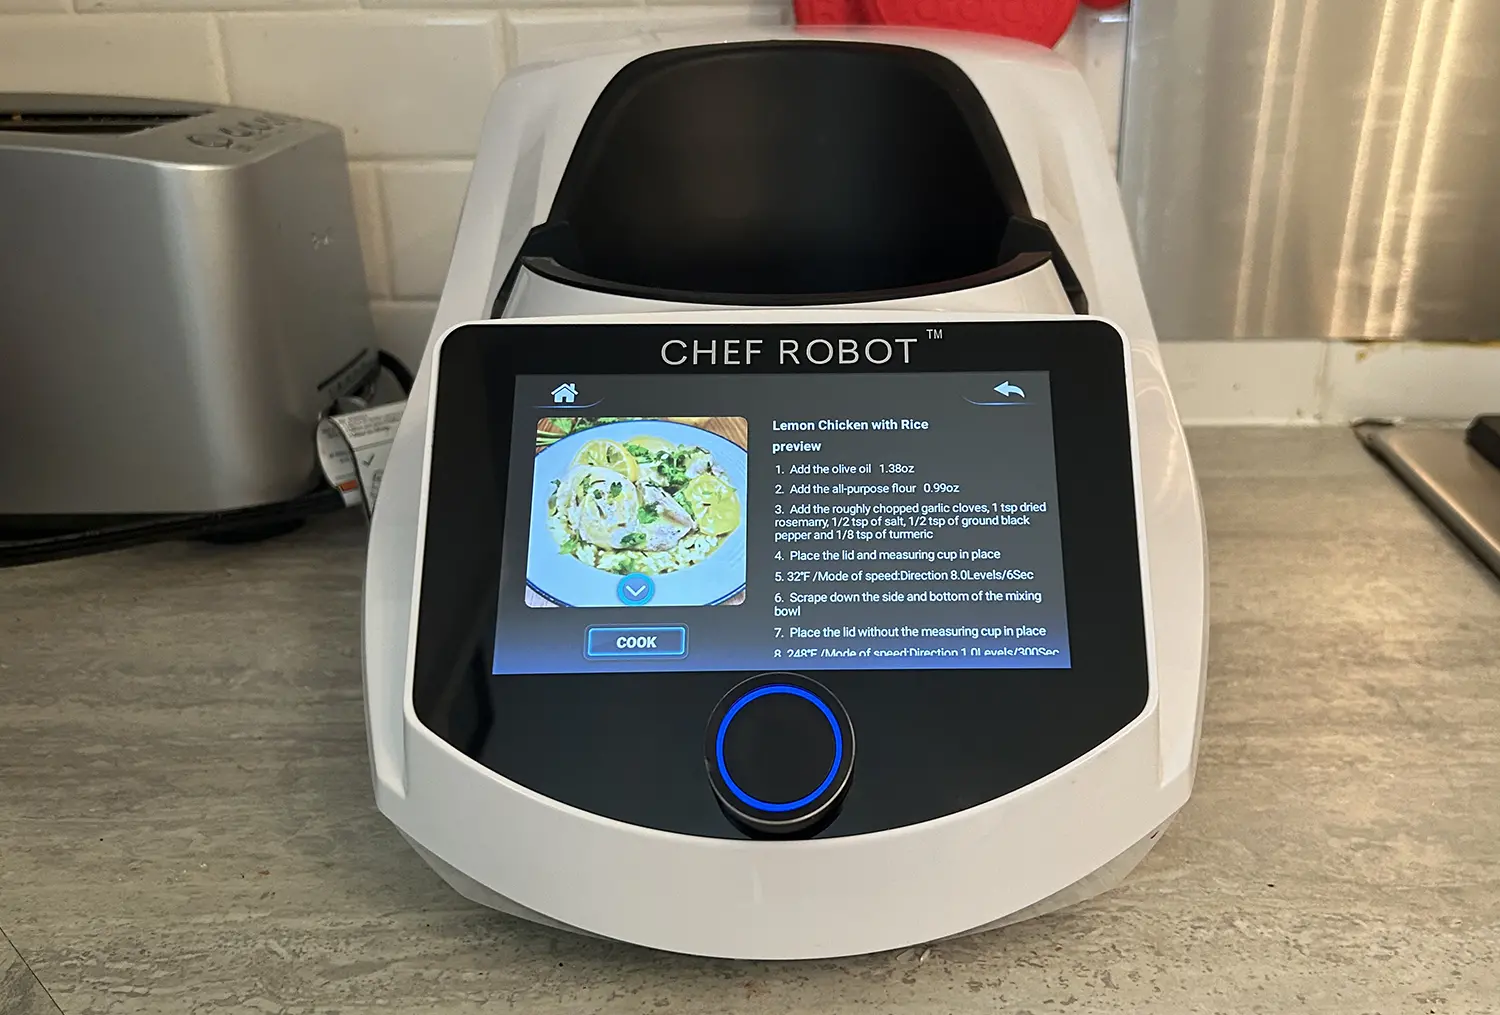 Chef Robot recipe outline